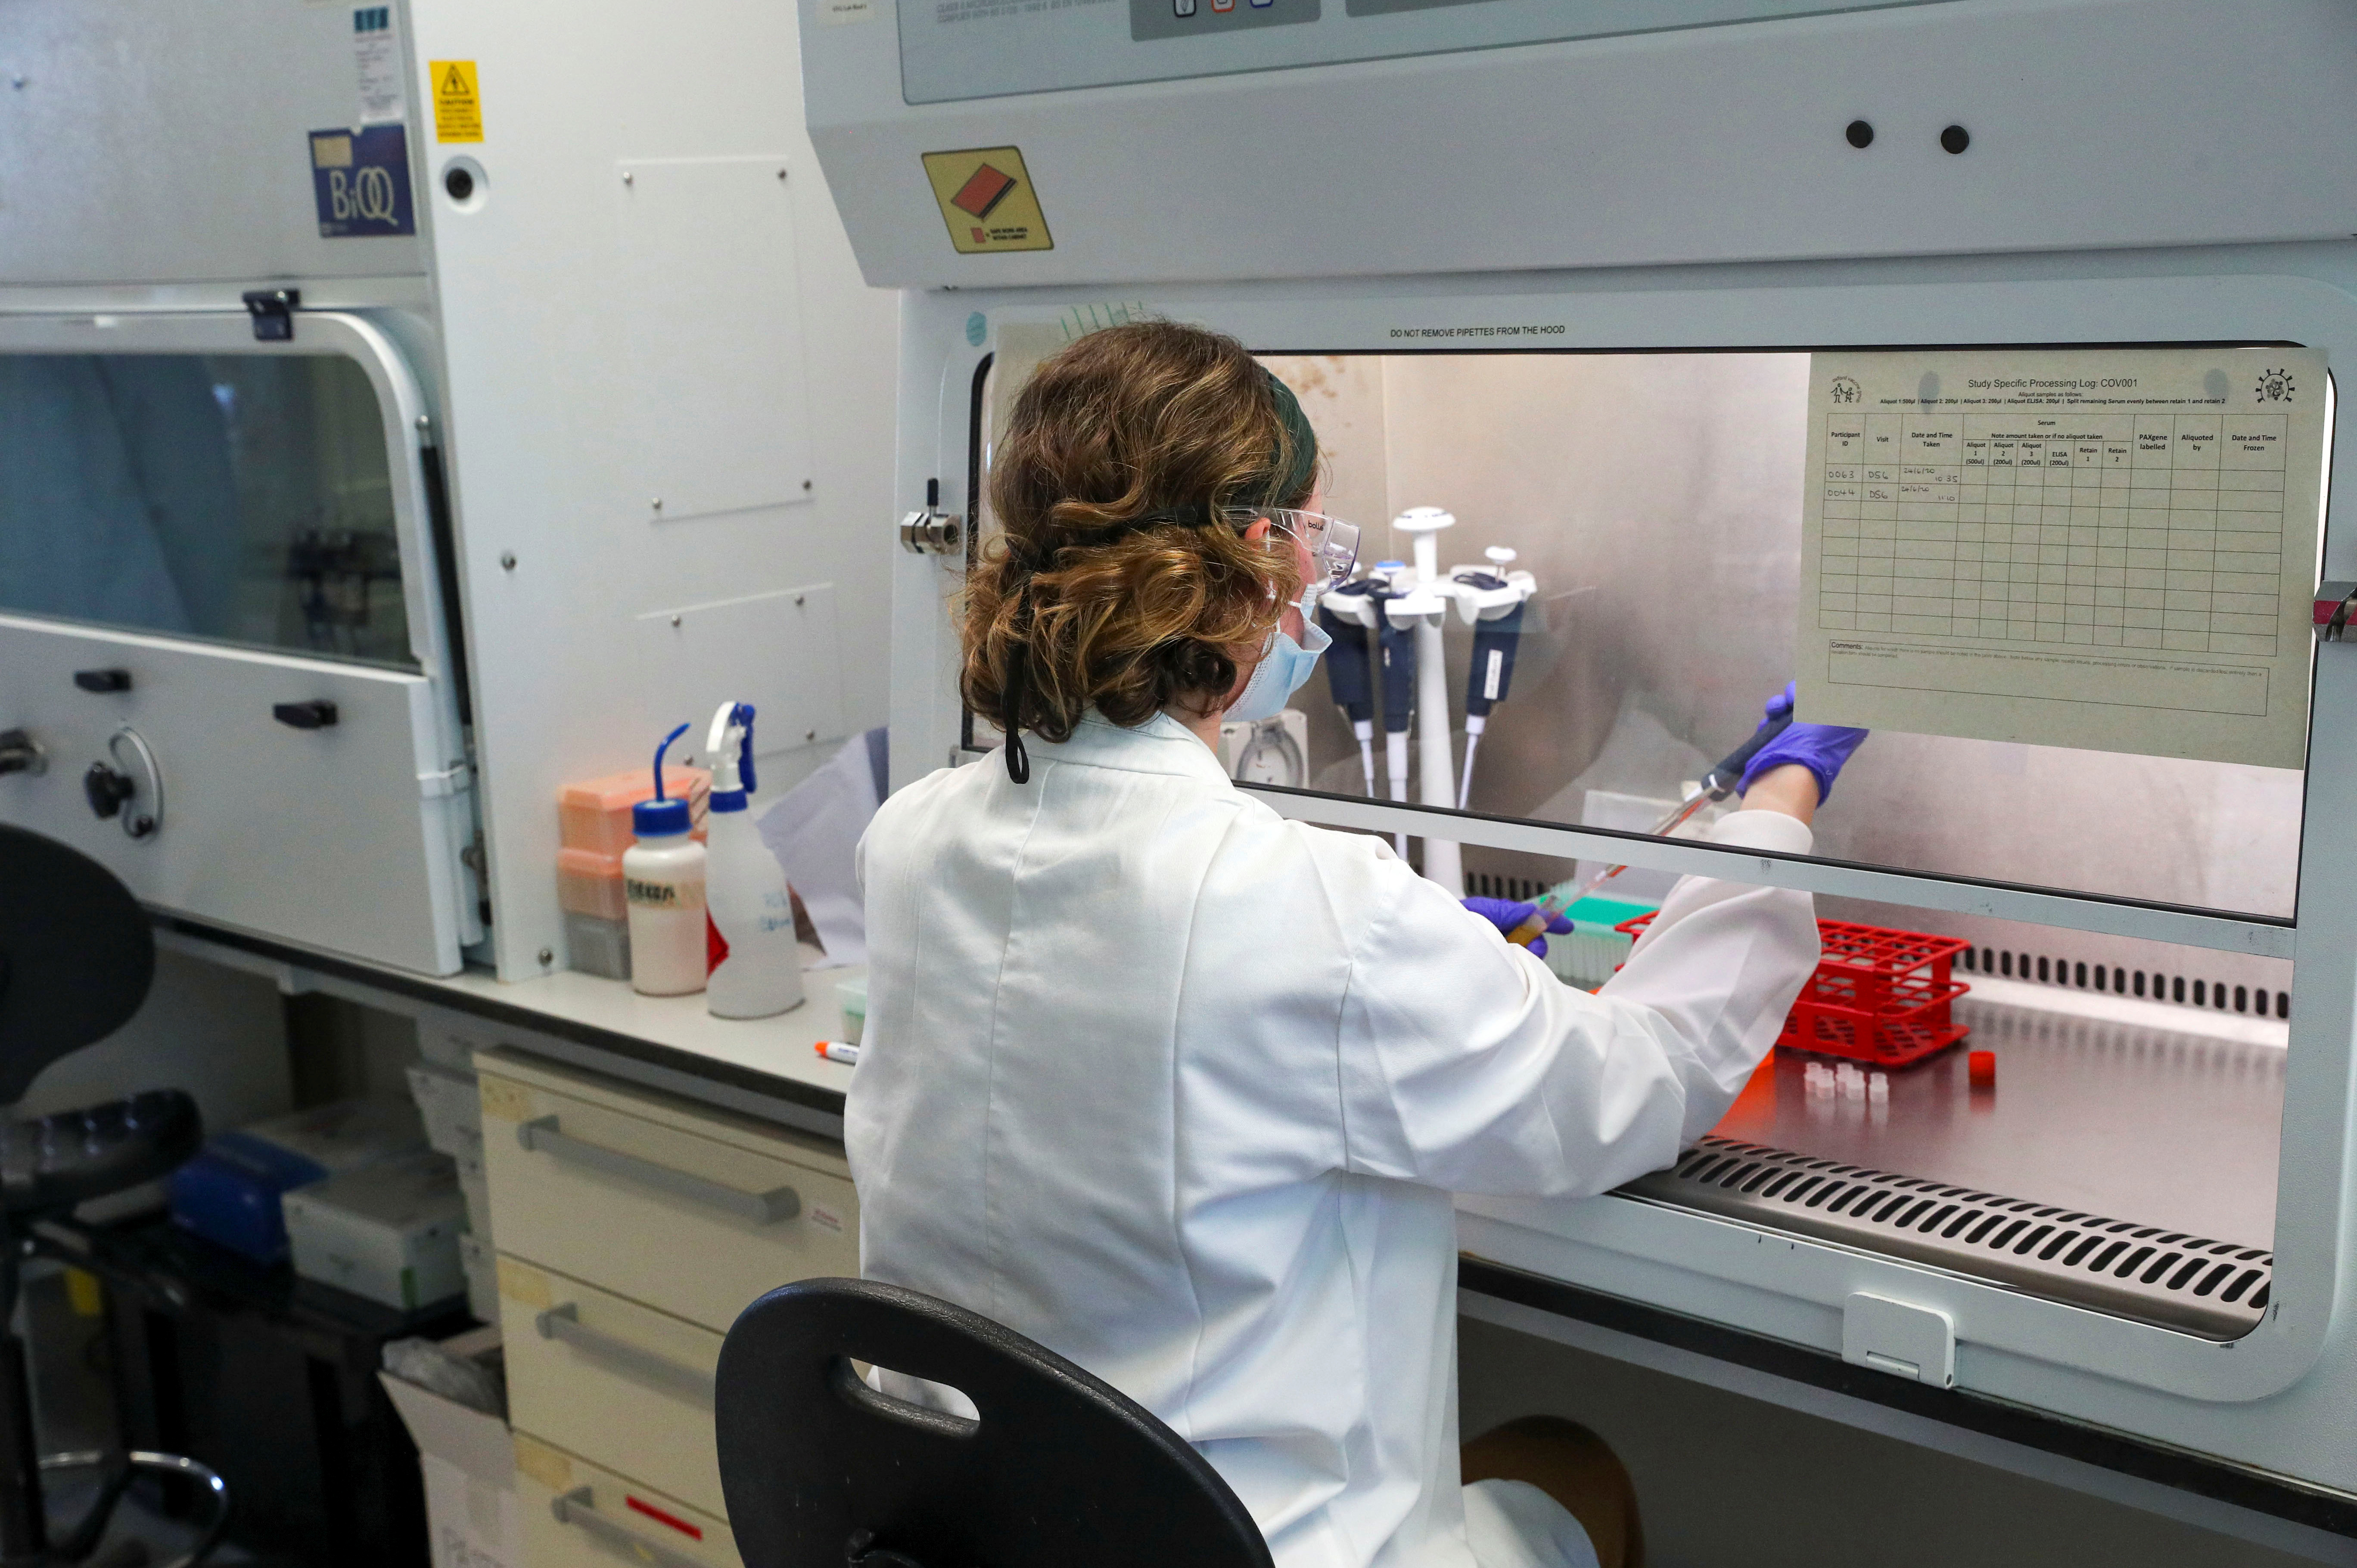 Una científica trabaja en el laboratorio de fabricación donde se produce la vacuna contra el COVID-19 (Steve Parsons/Pool vía REUTERS)